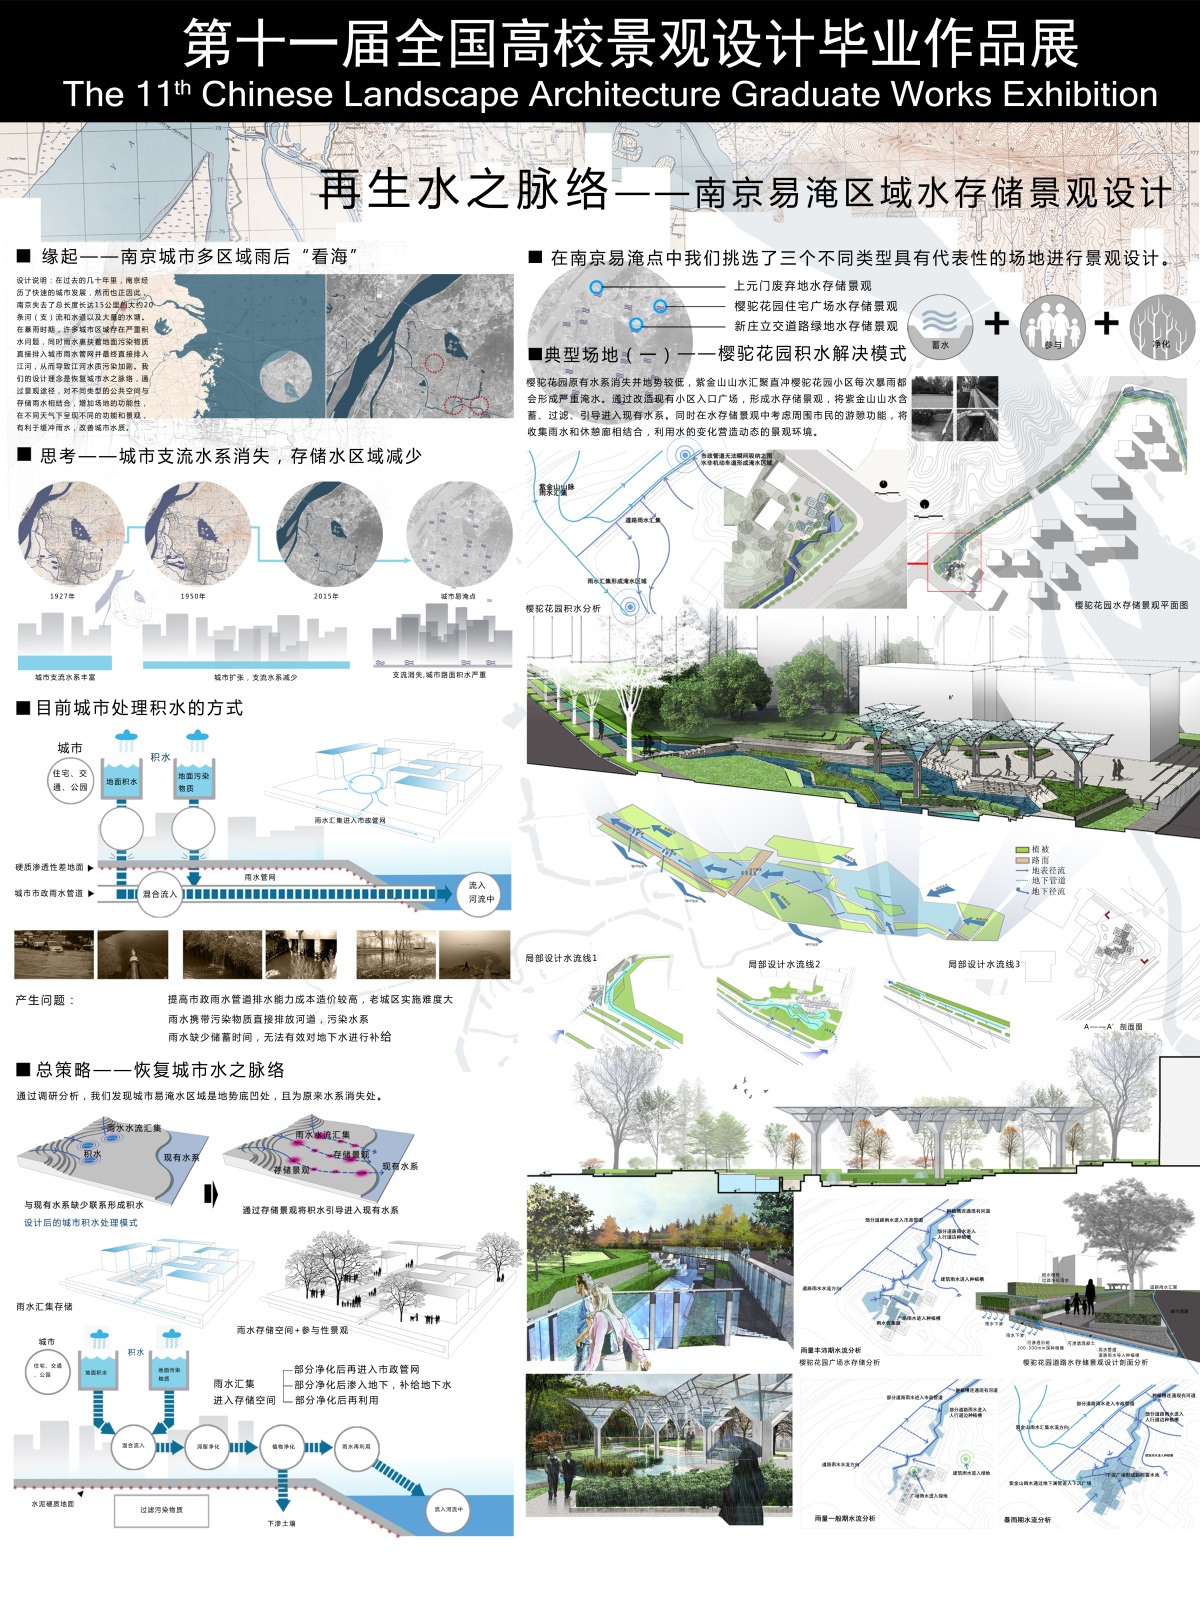 再生水之脉络——南京易淹区域水存储景观设计-1